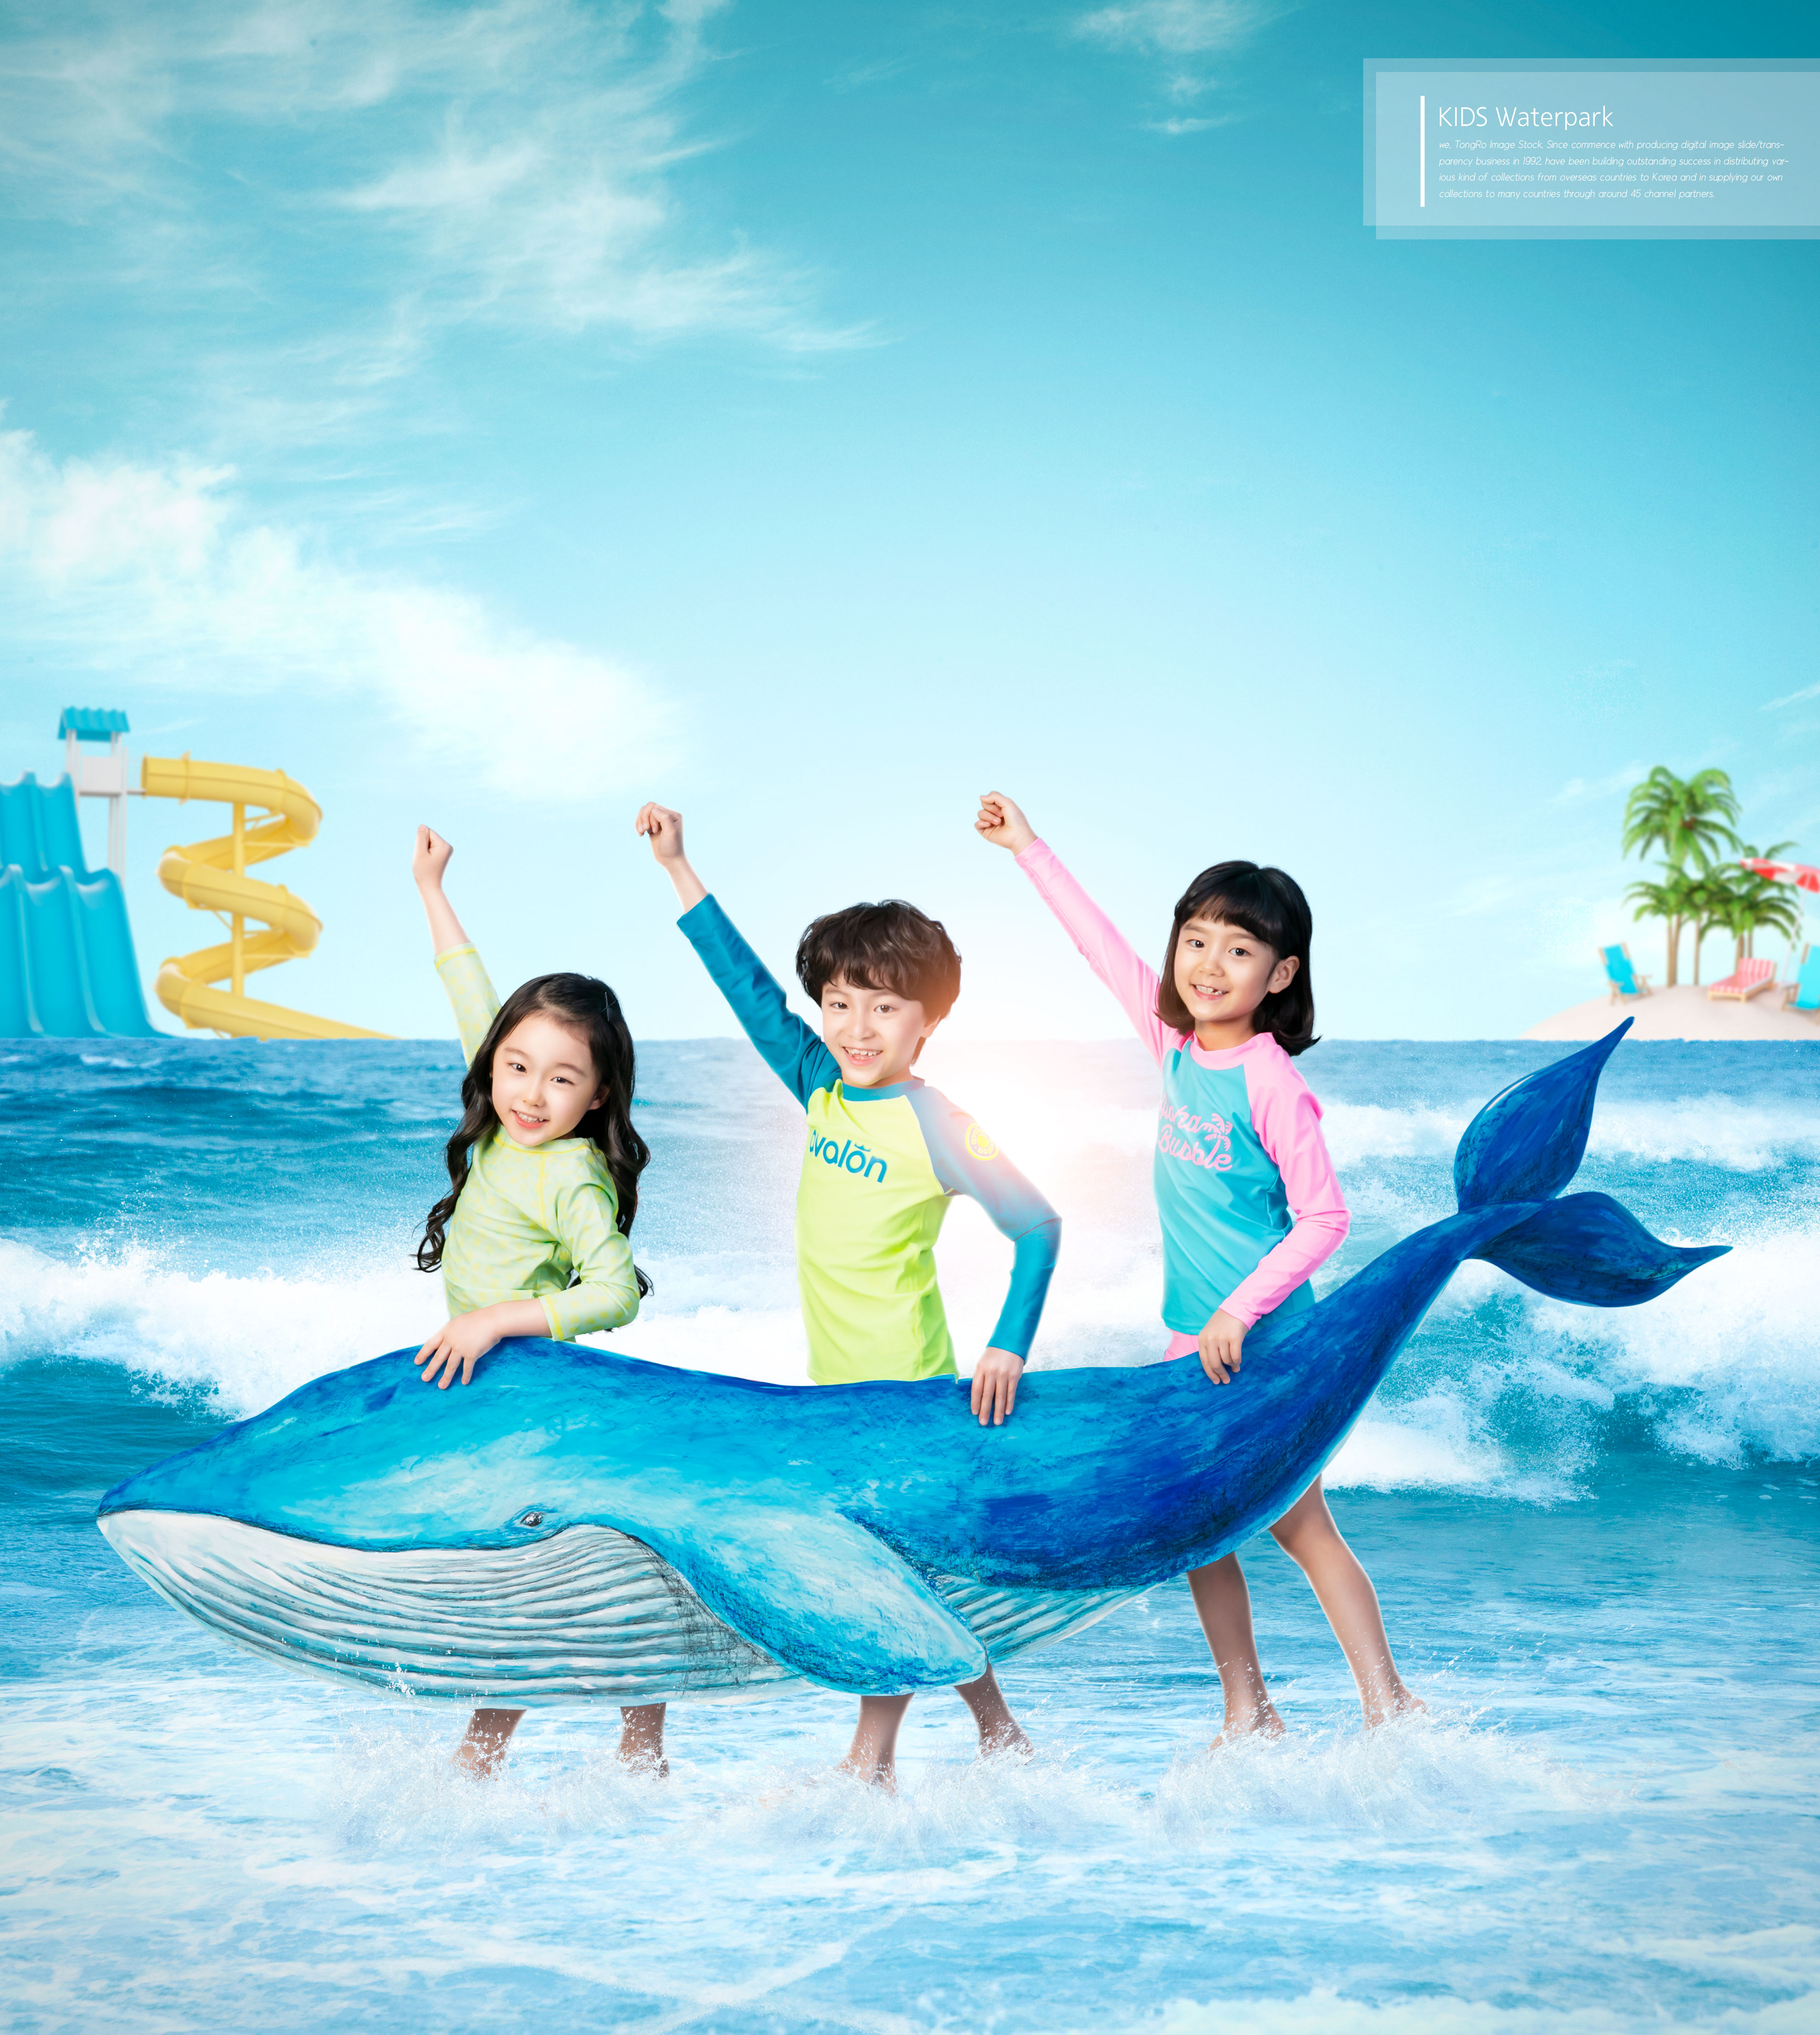 夏季暑假儿童水上乐园活动广告海报设计套装插图(4)